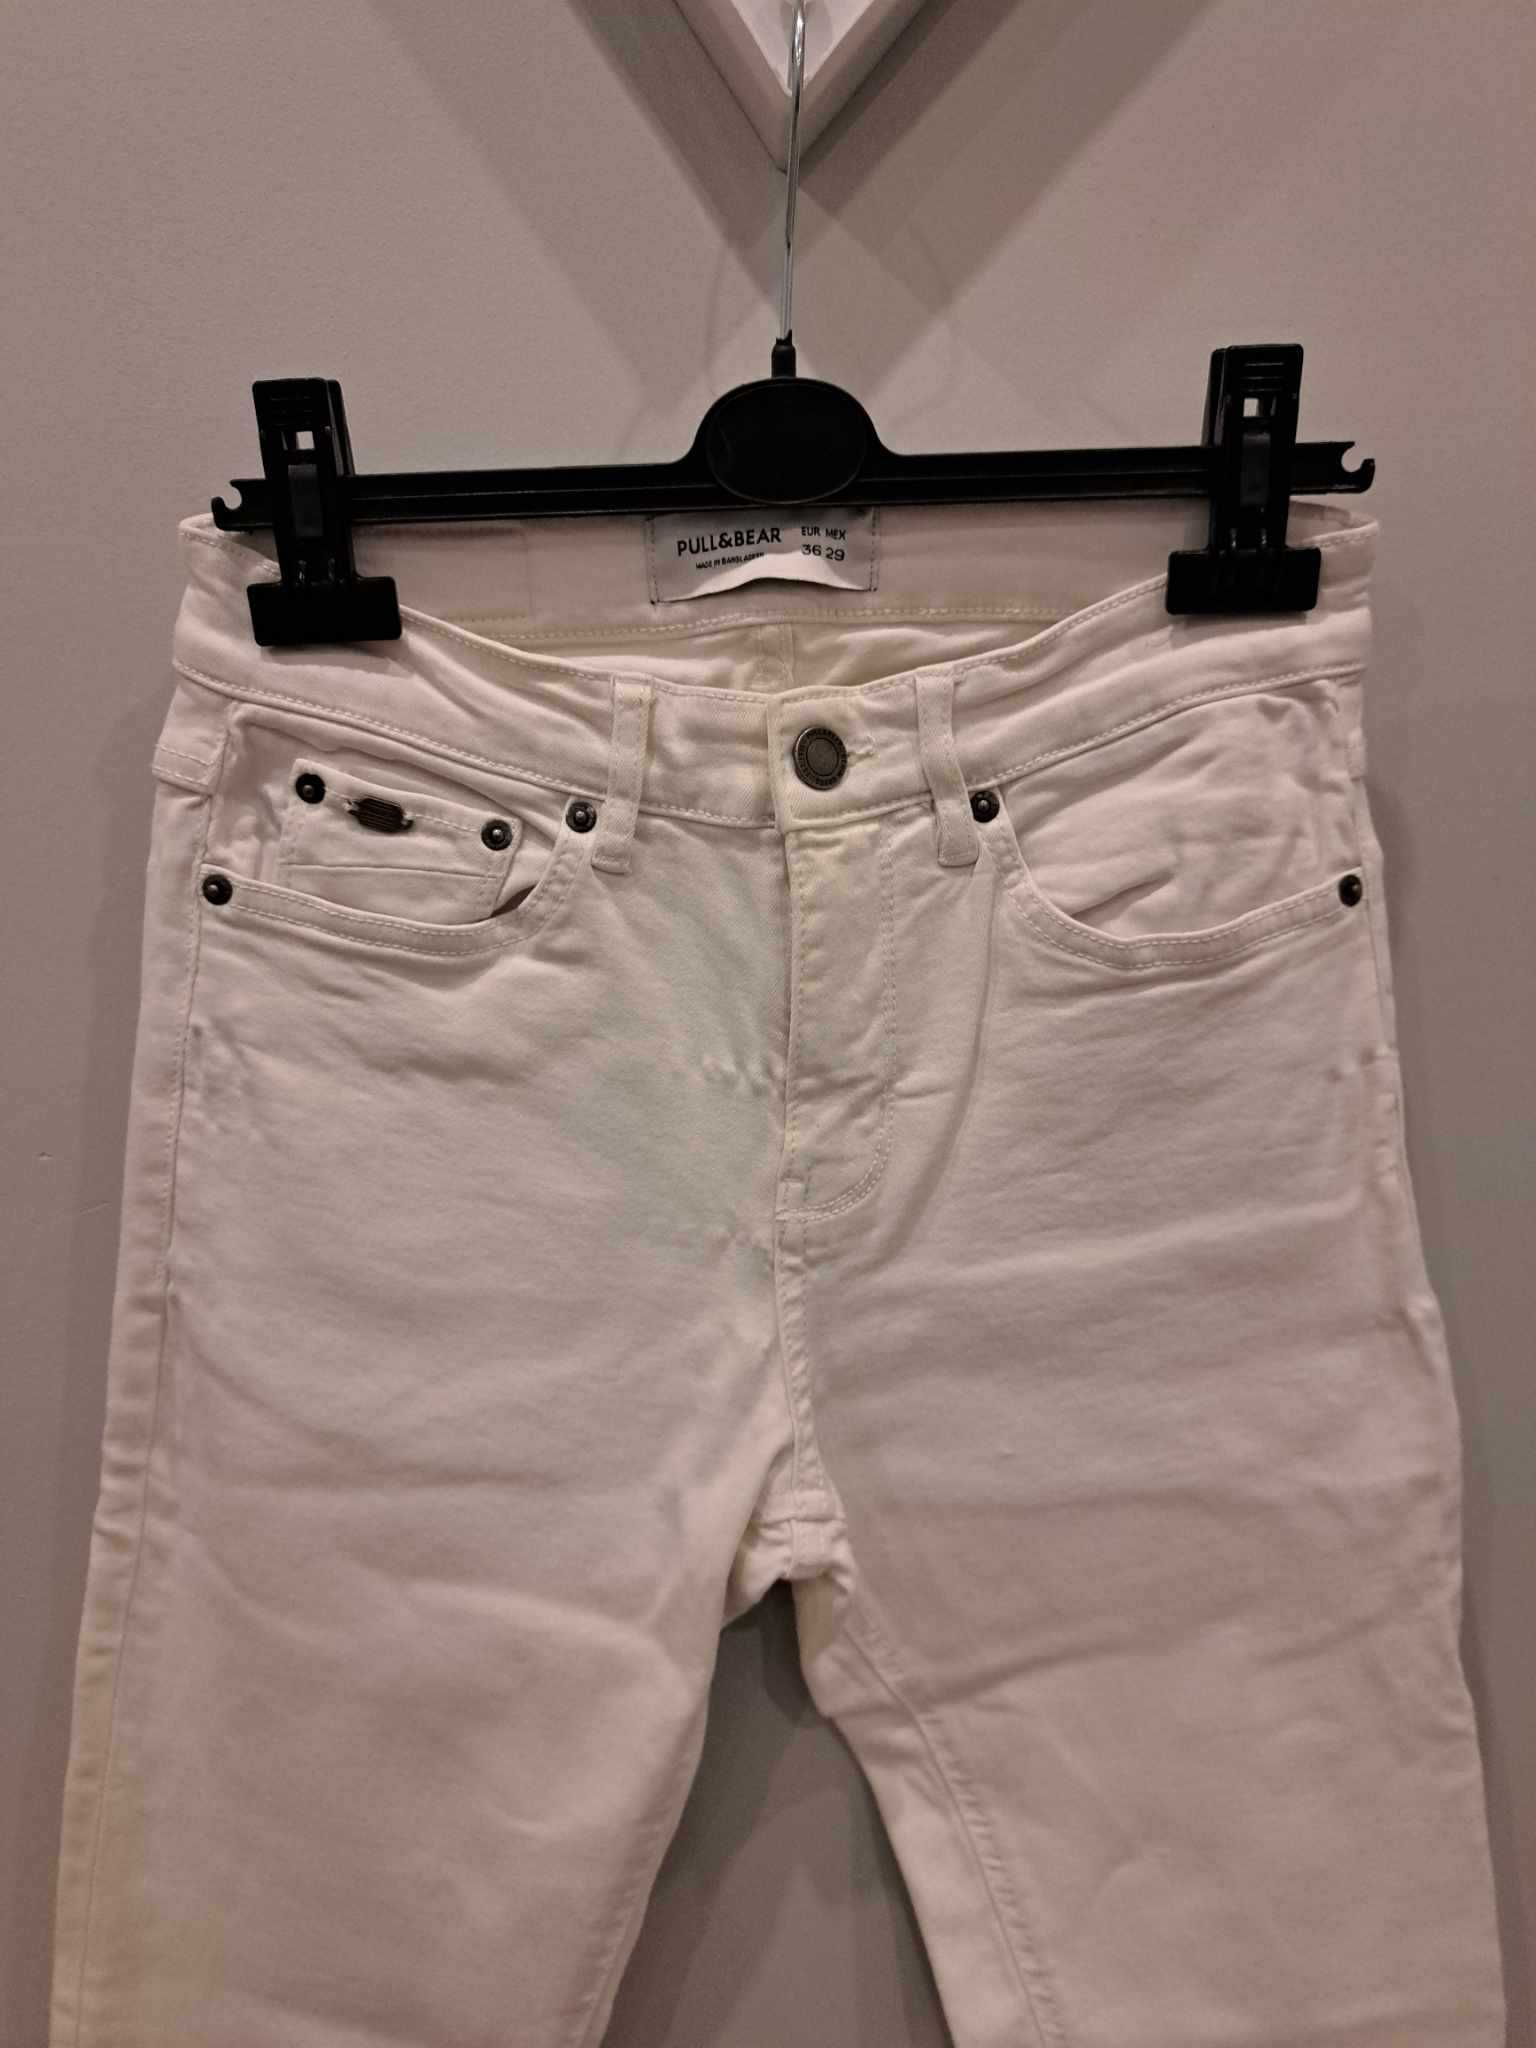 Spodnie jeans białe roz. 36, super skinny fit, wysoki stan, kieszenie